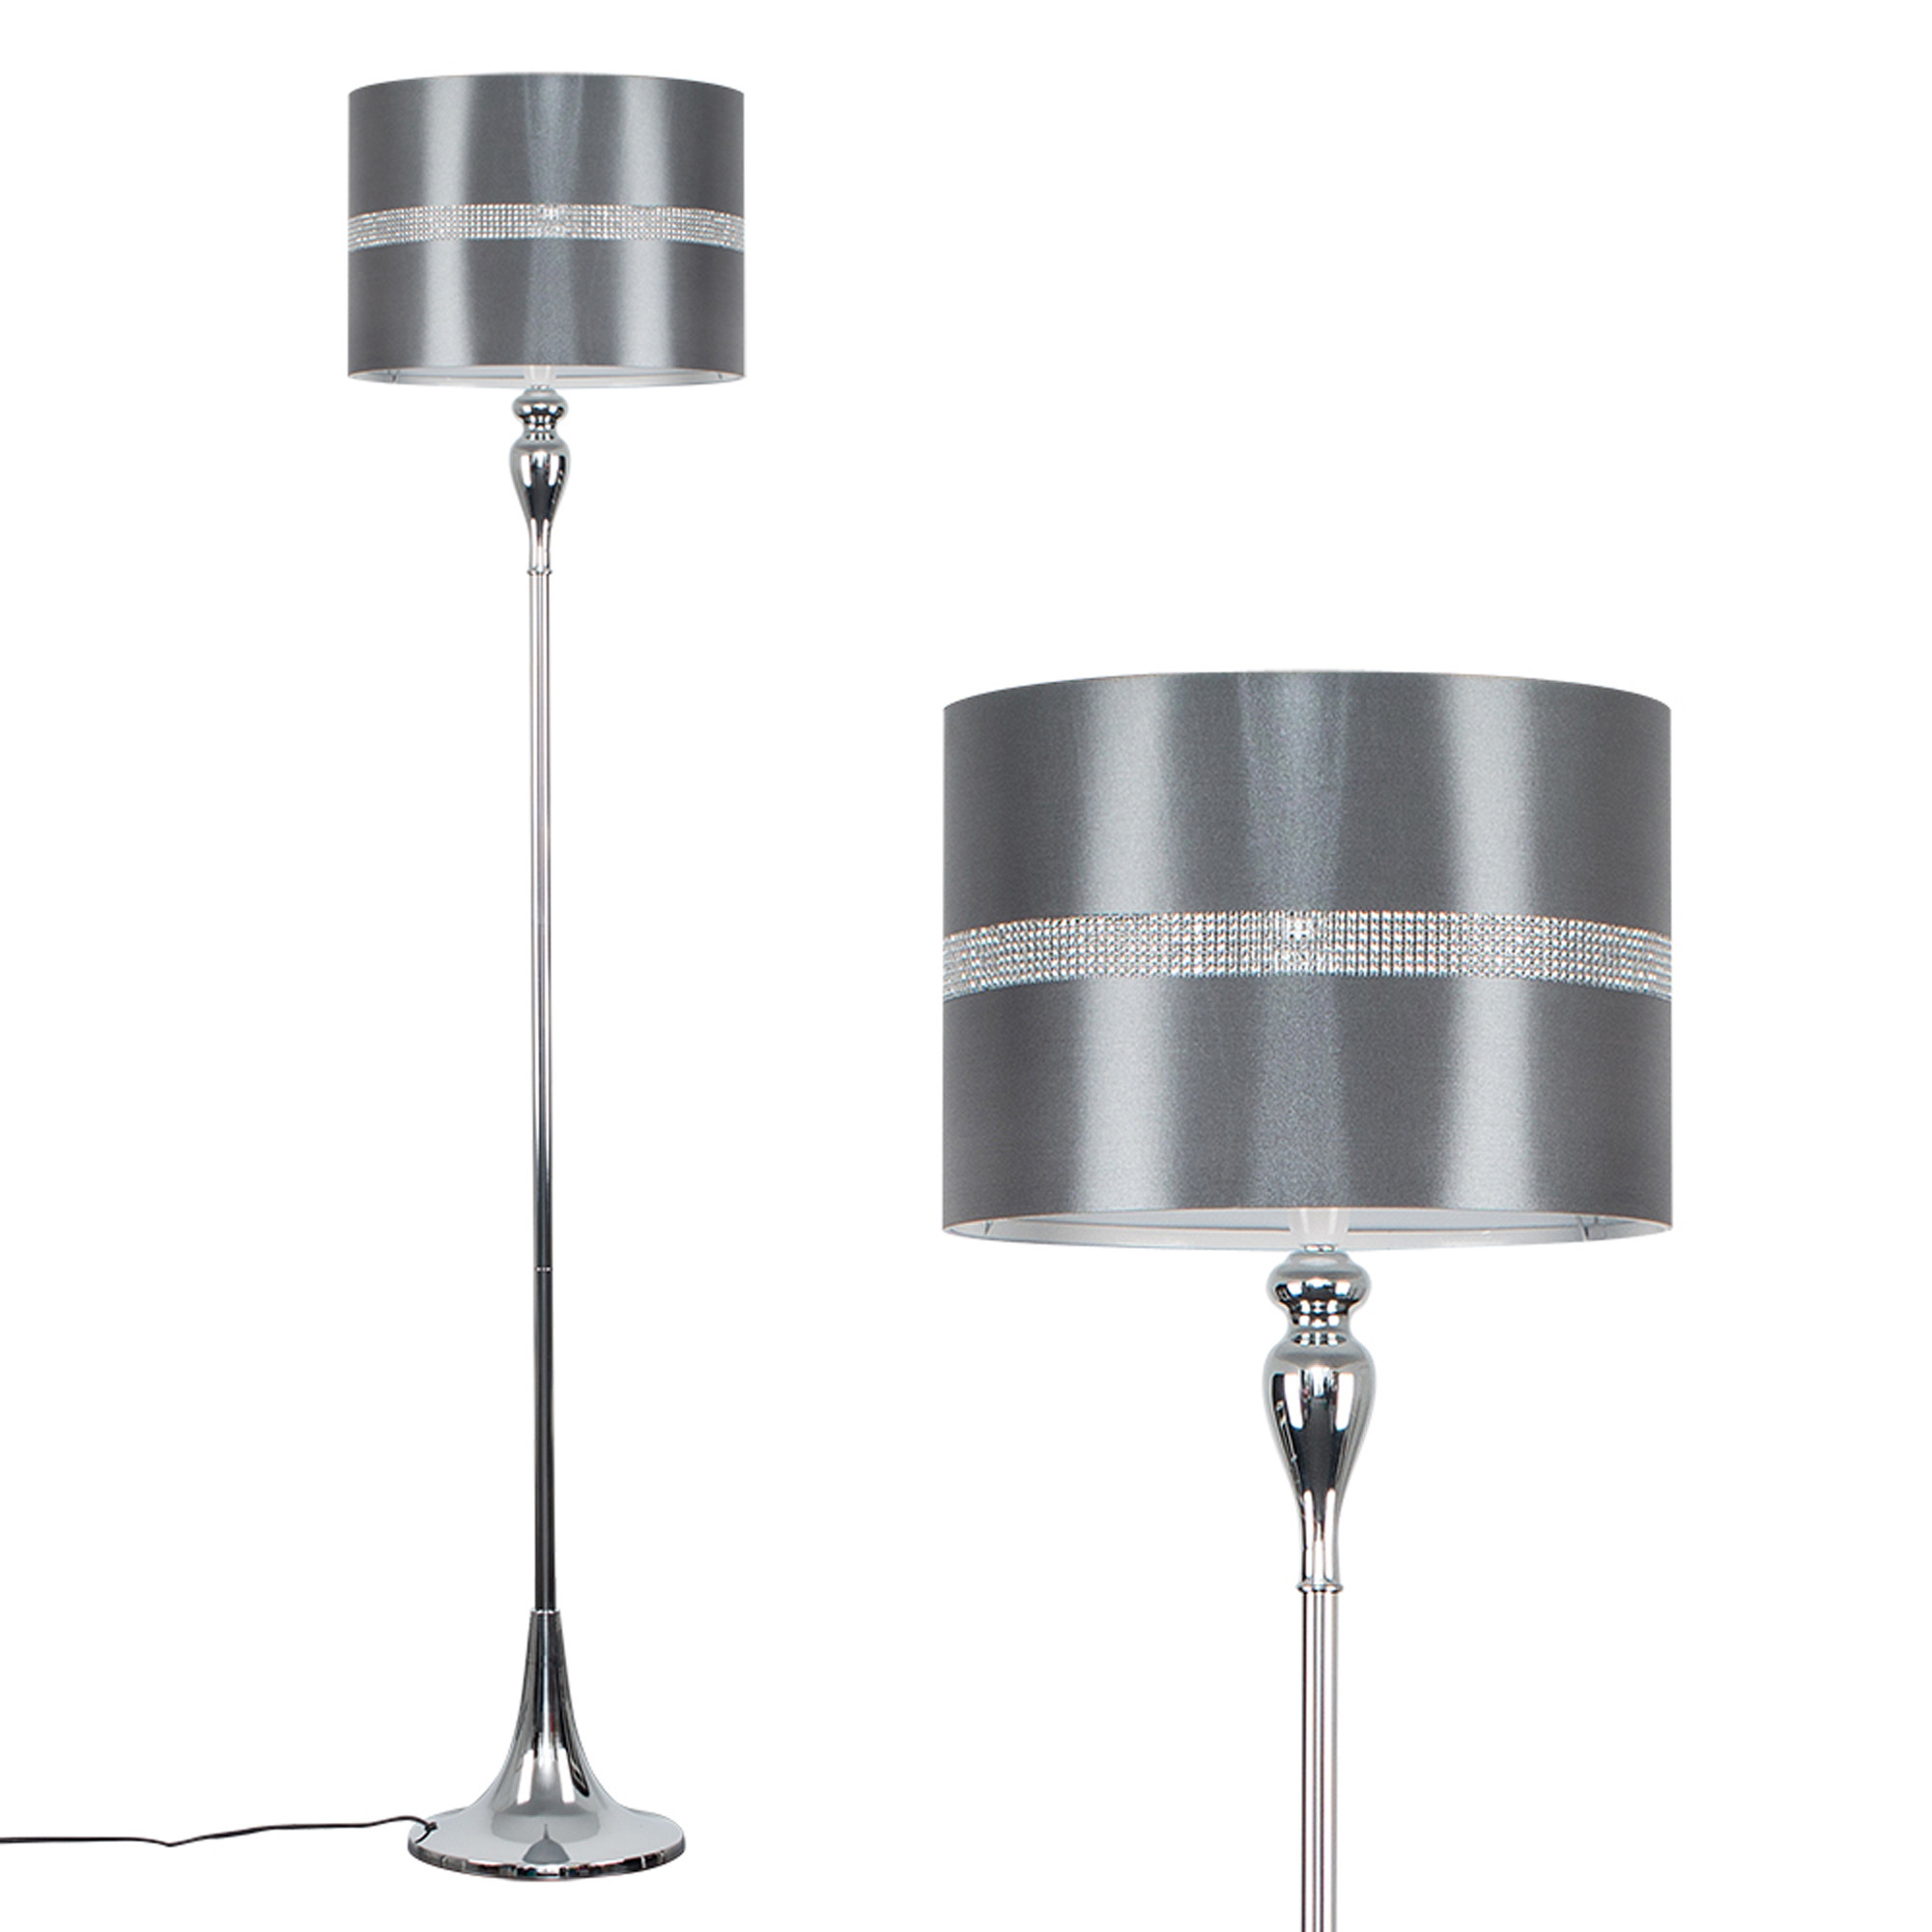 Lamps Floor Lamp Arm Chrome Floor Lamp Asda Chrome Floor with regard to size 2000 X 2000